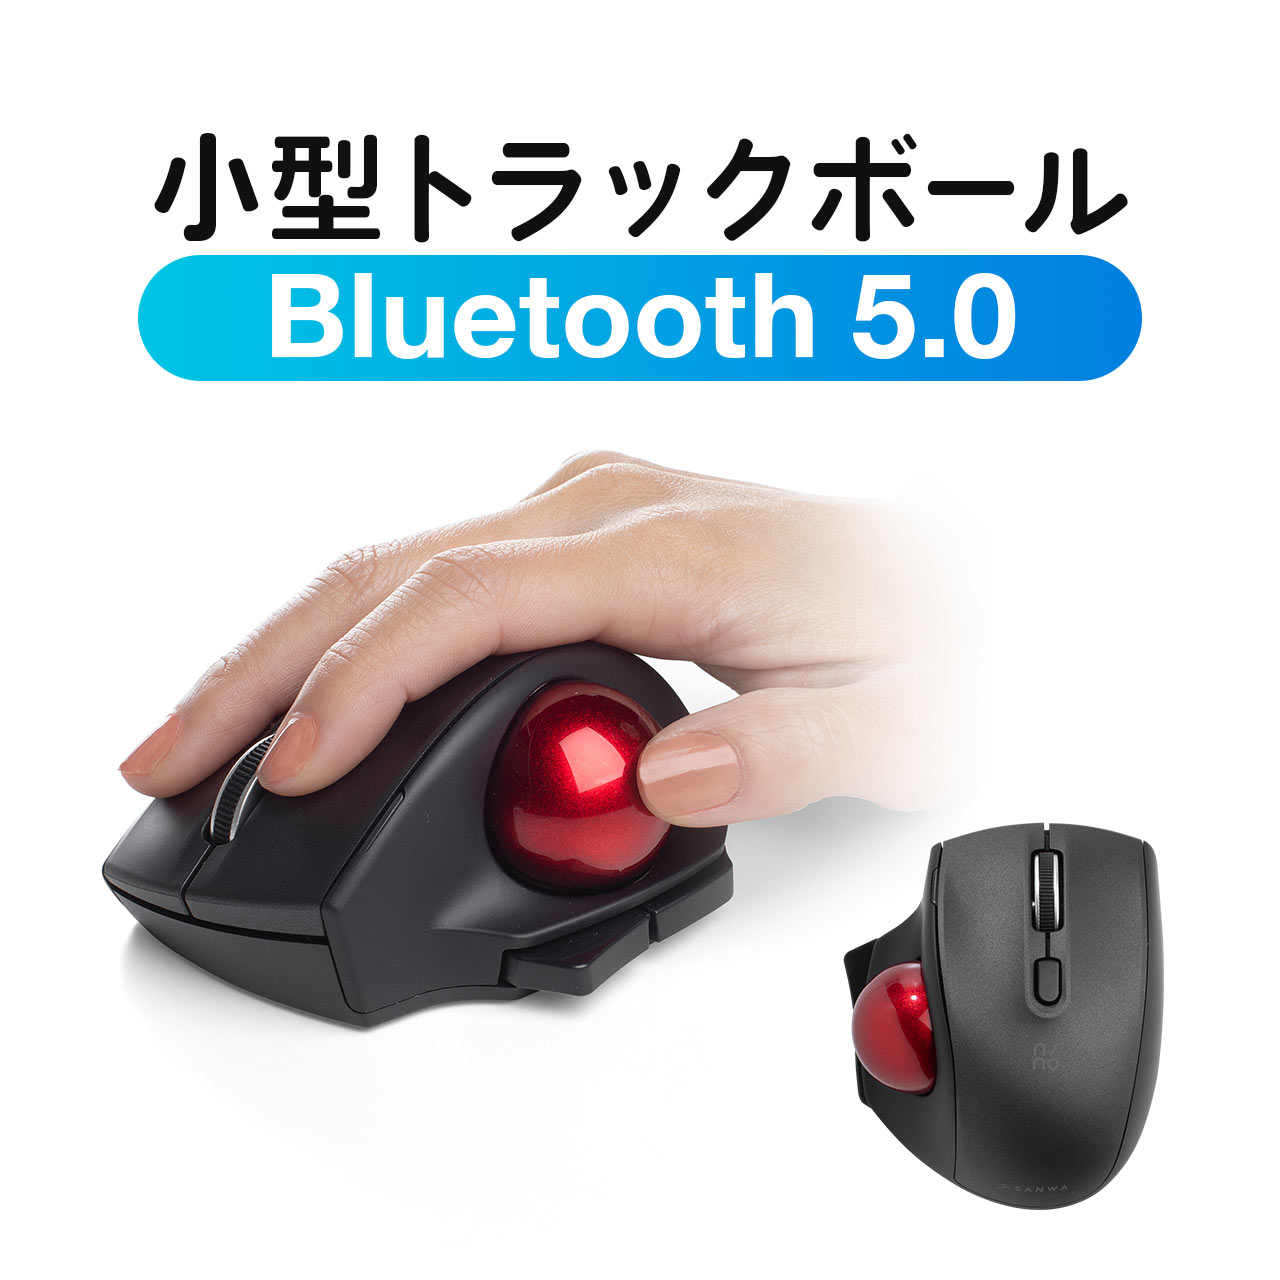 トラックボール マウス 小型 Bluetooth 静音ボタン エルゴノミクス 親指操作 レーザーセンサー コンパクト 5ボタン カウント数切り替え nino ニノ 400-MABTTB181